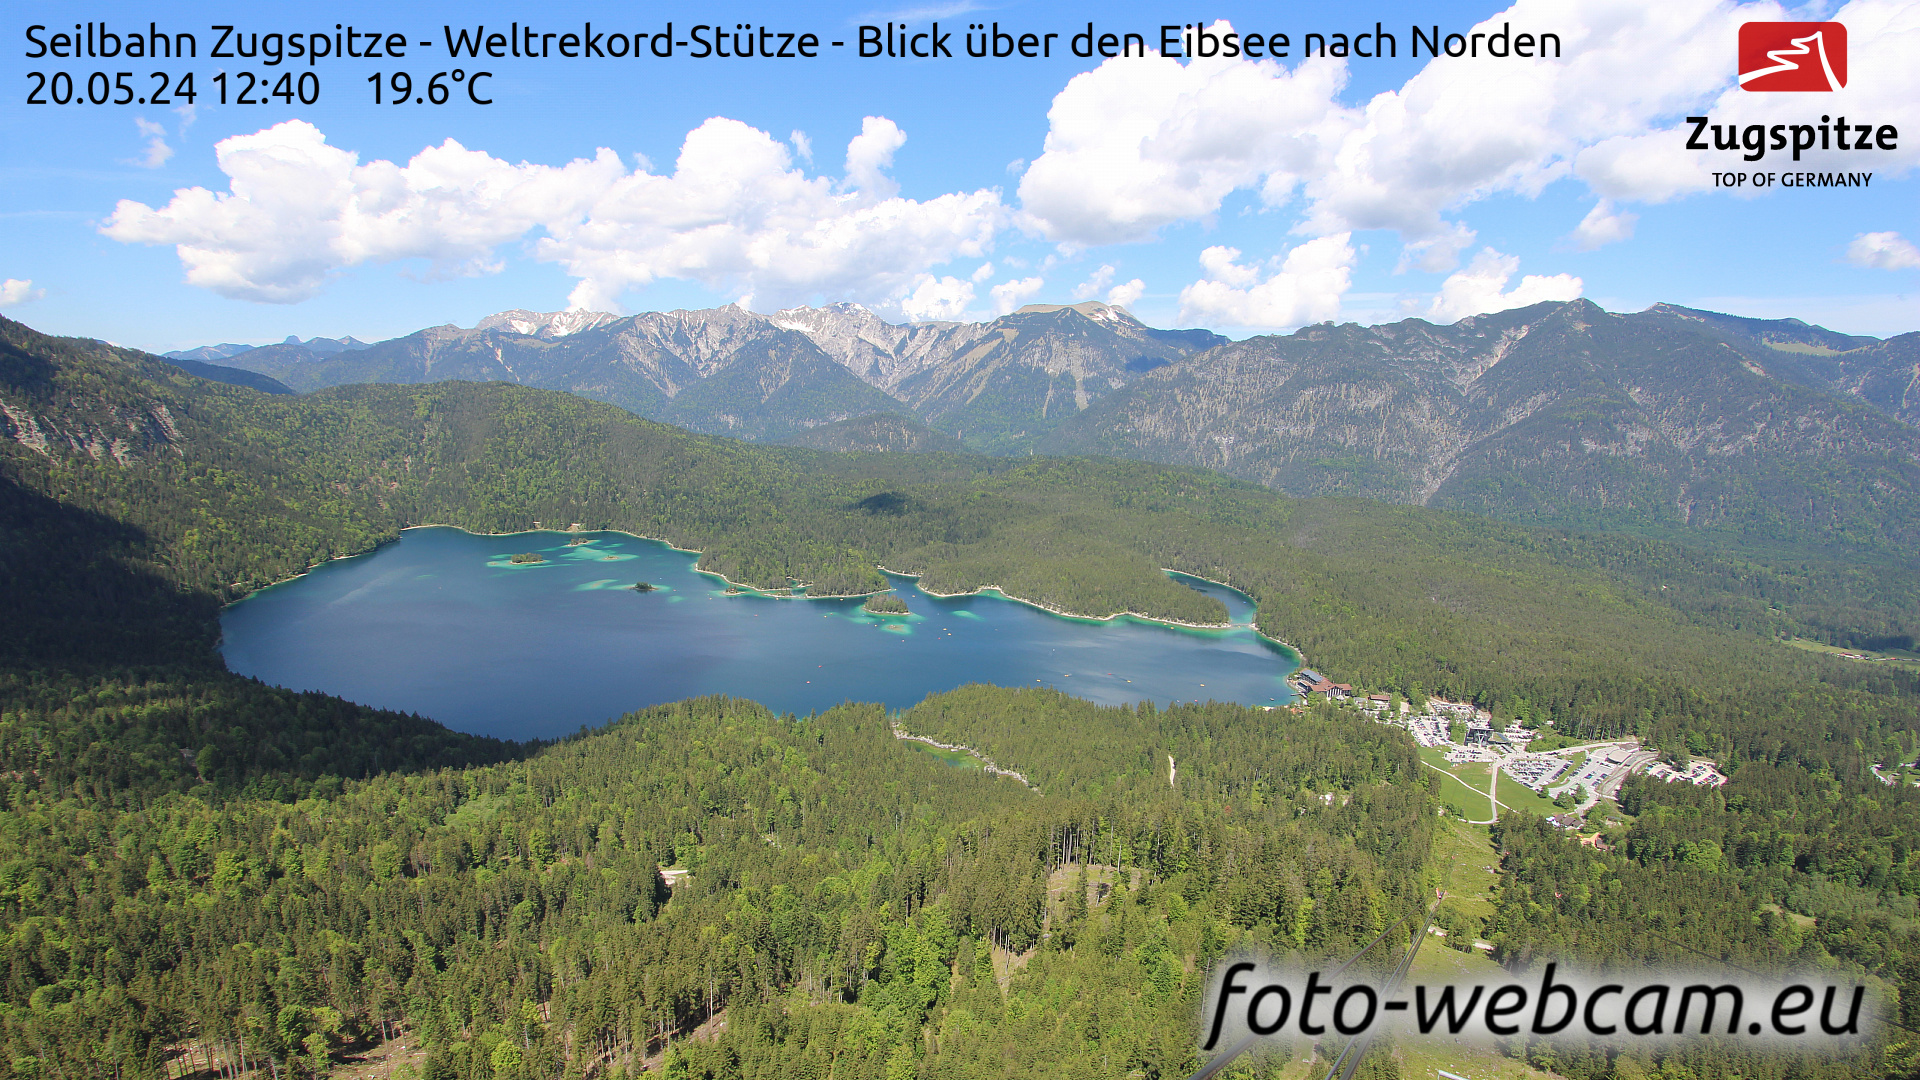 Zugspitze Wed. 12:49